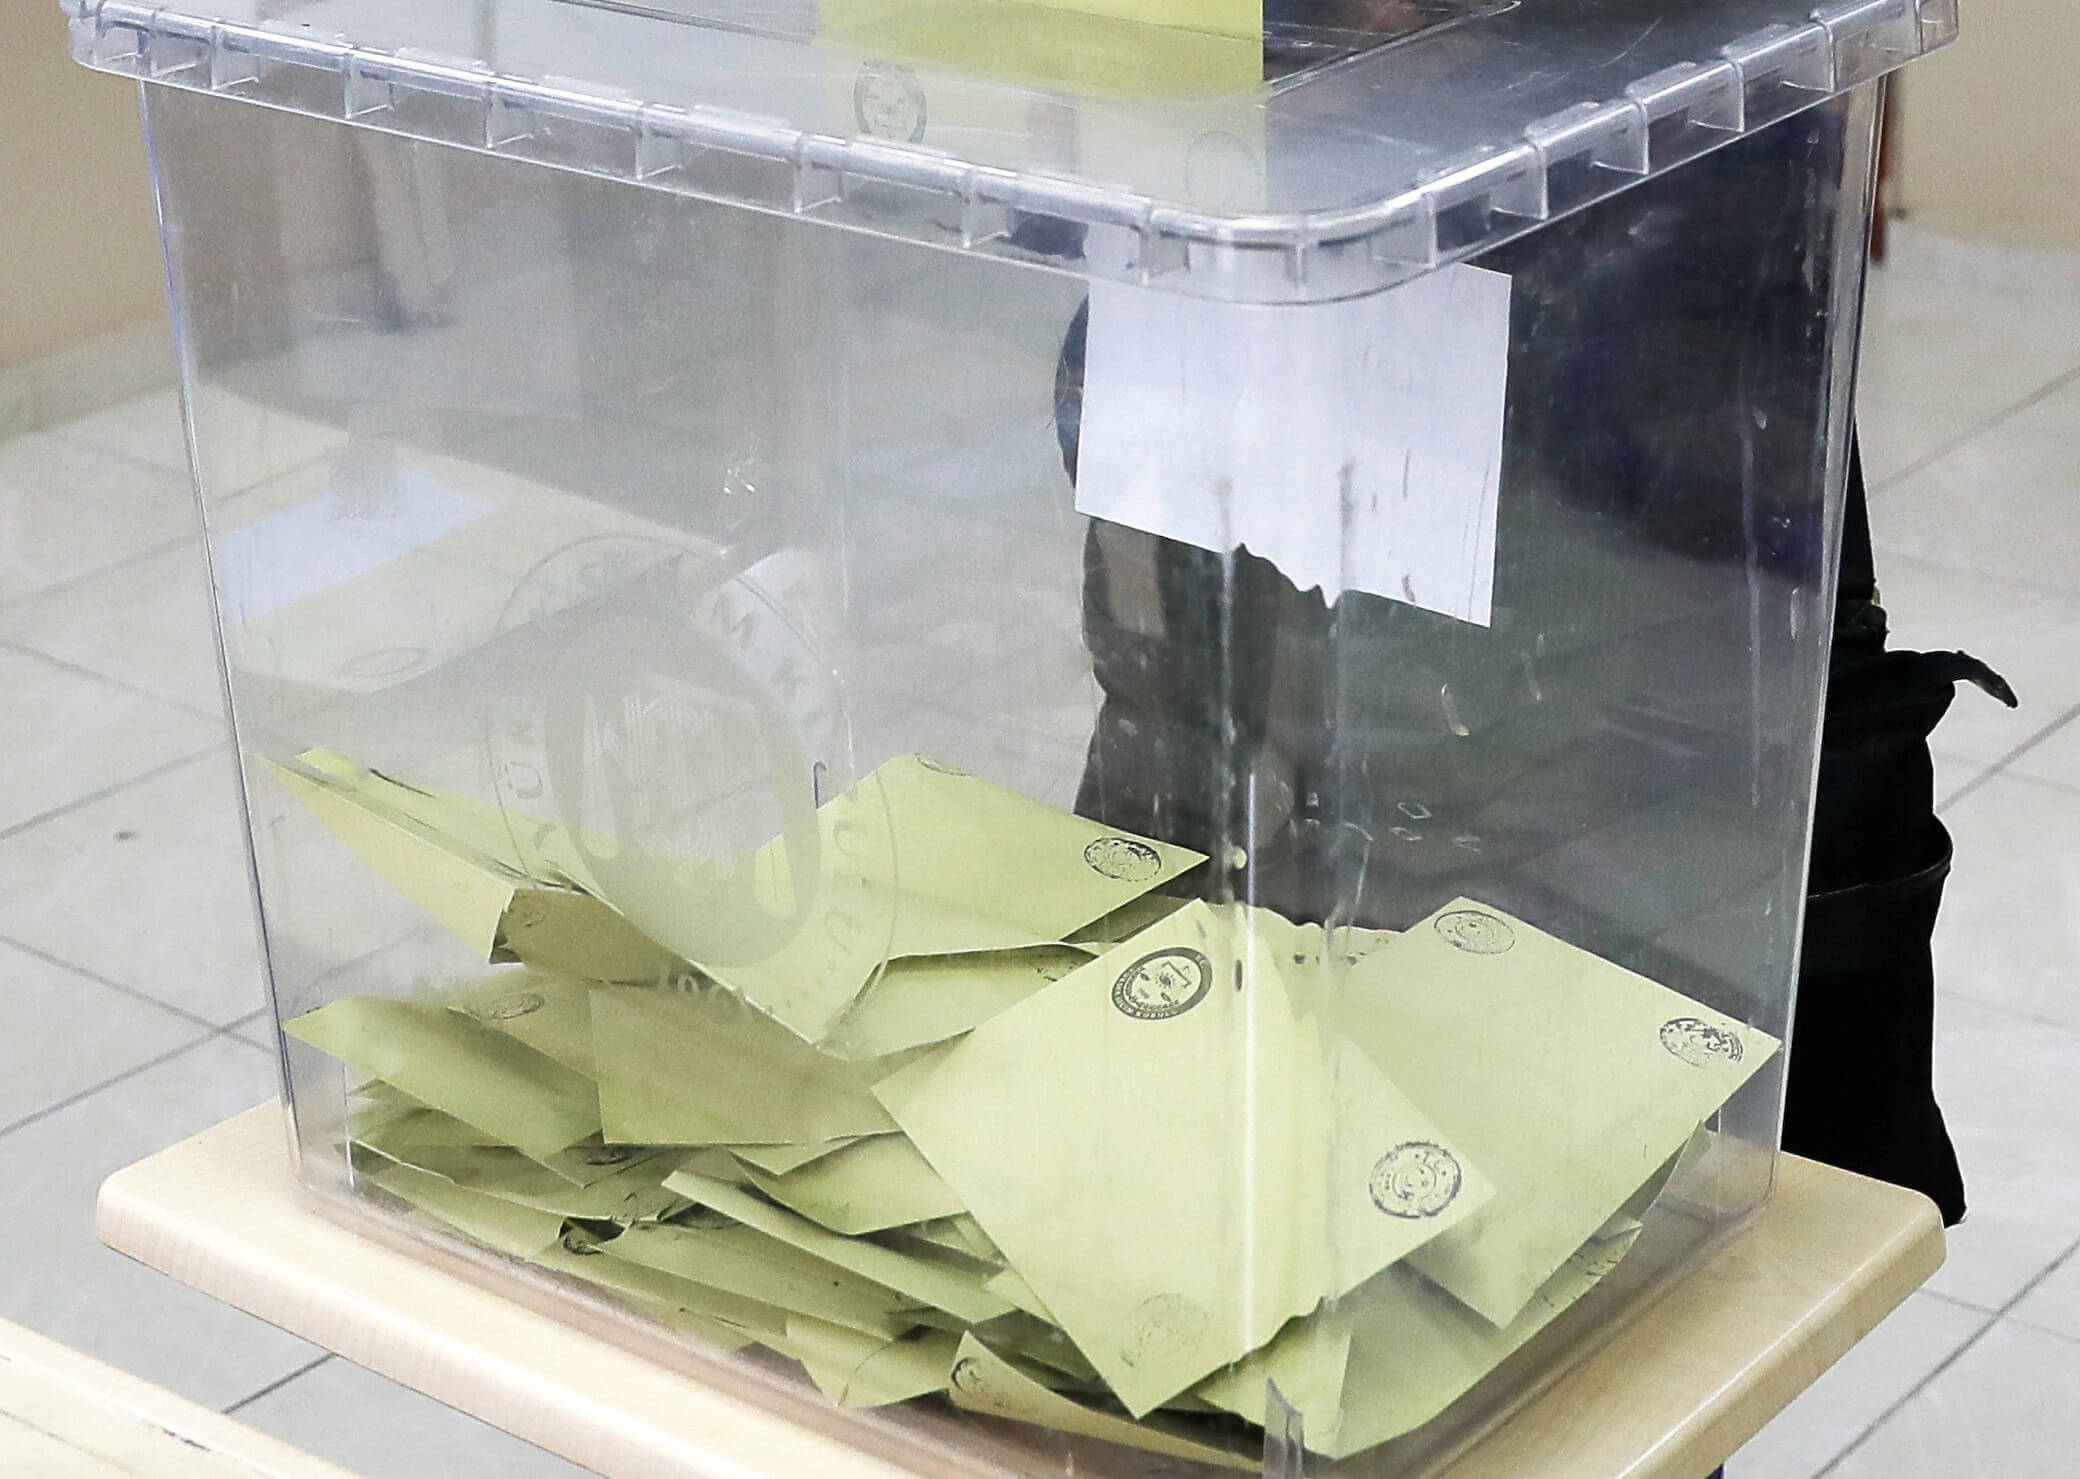 Εκλογές στην Τουρκια: Δύο νεκροί σε εκλογικό κέντρο!